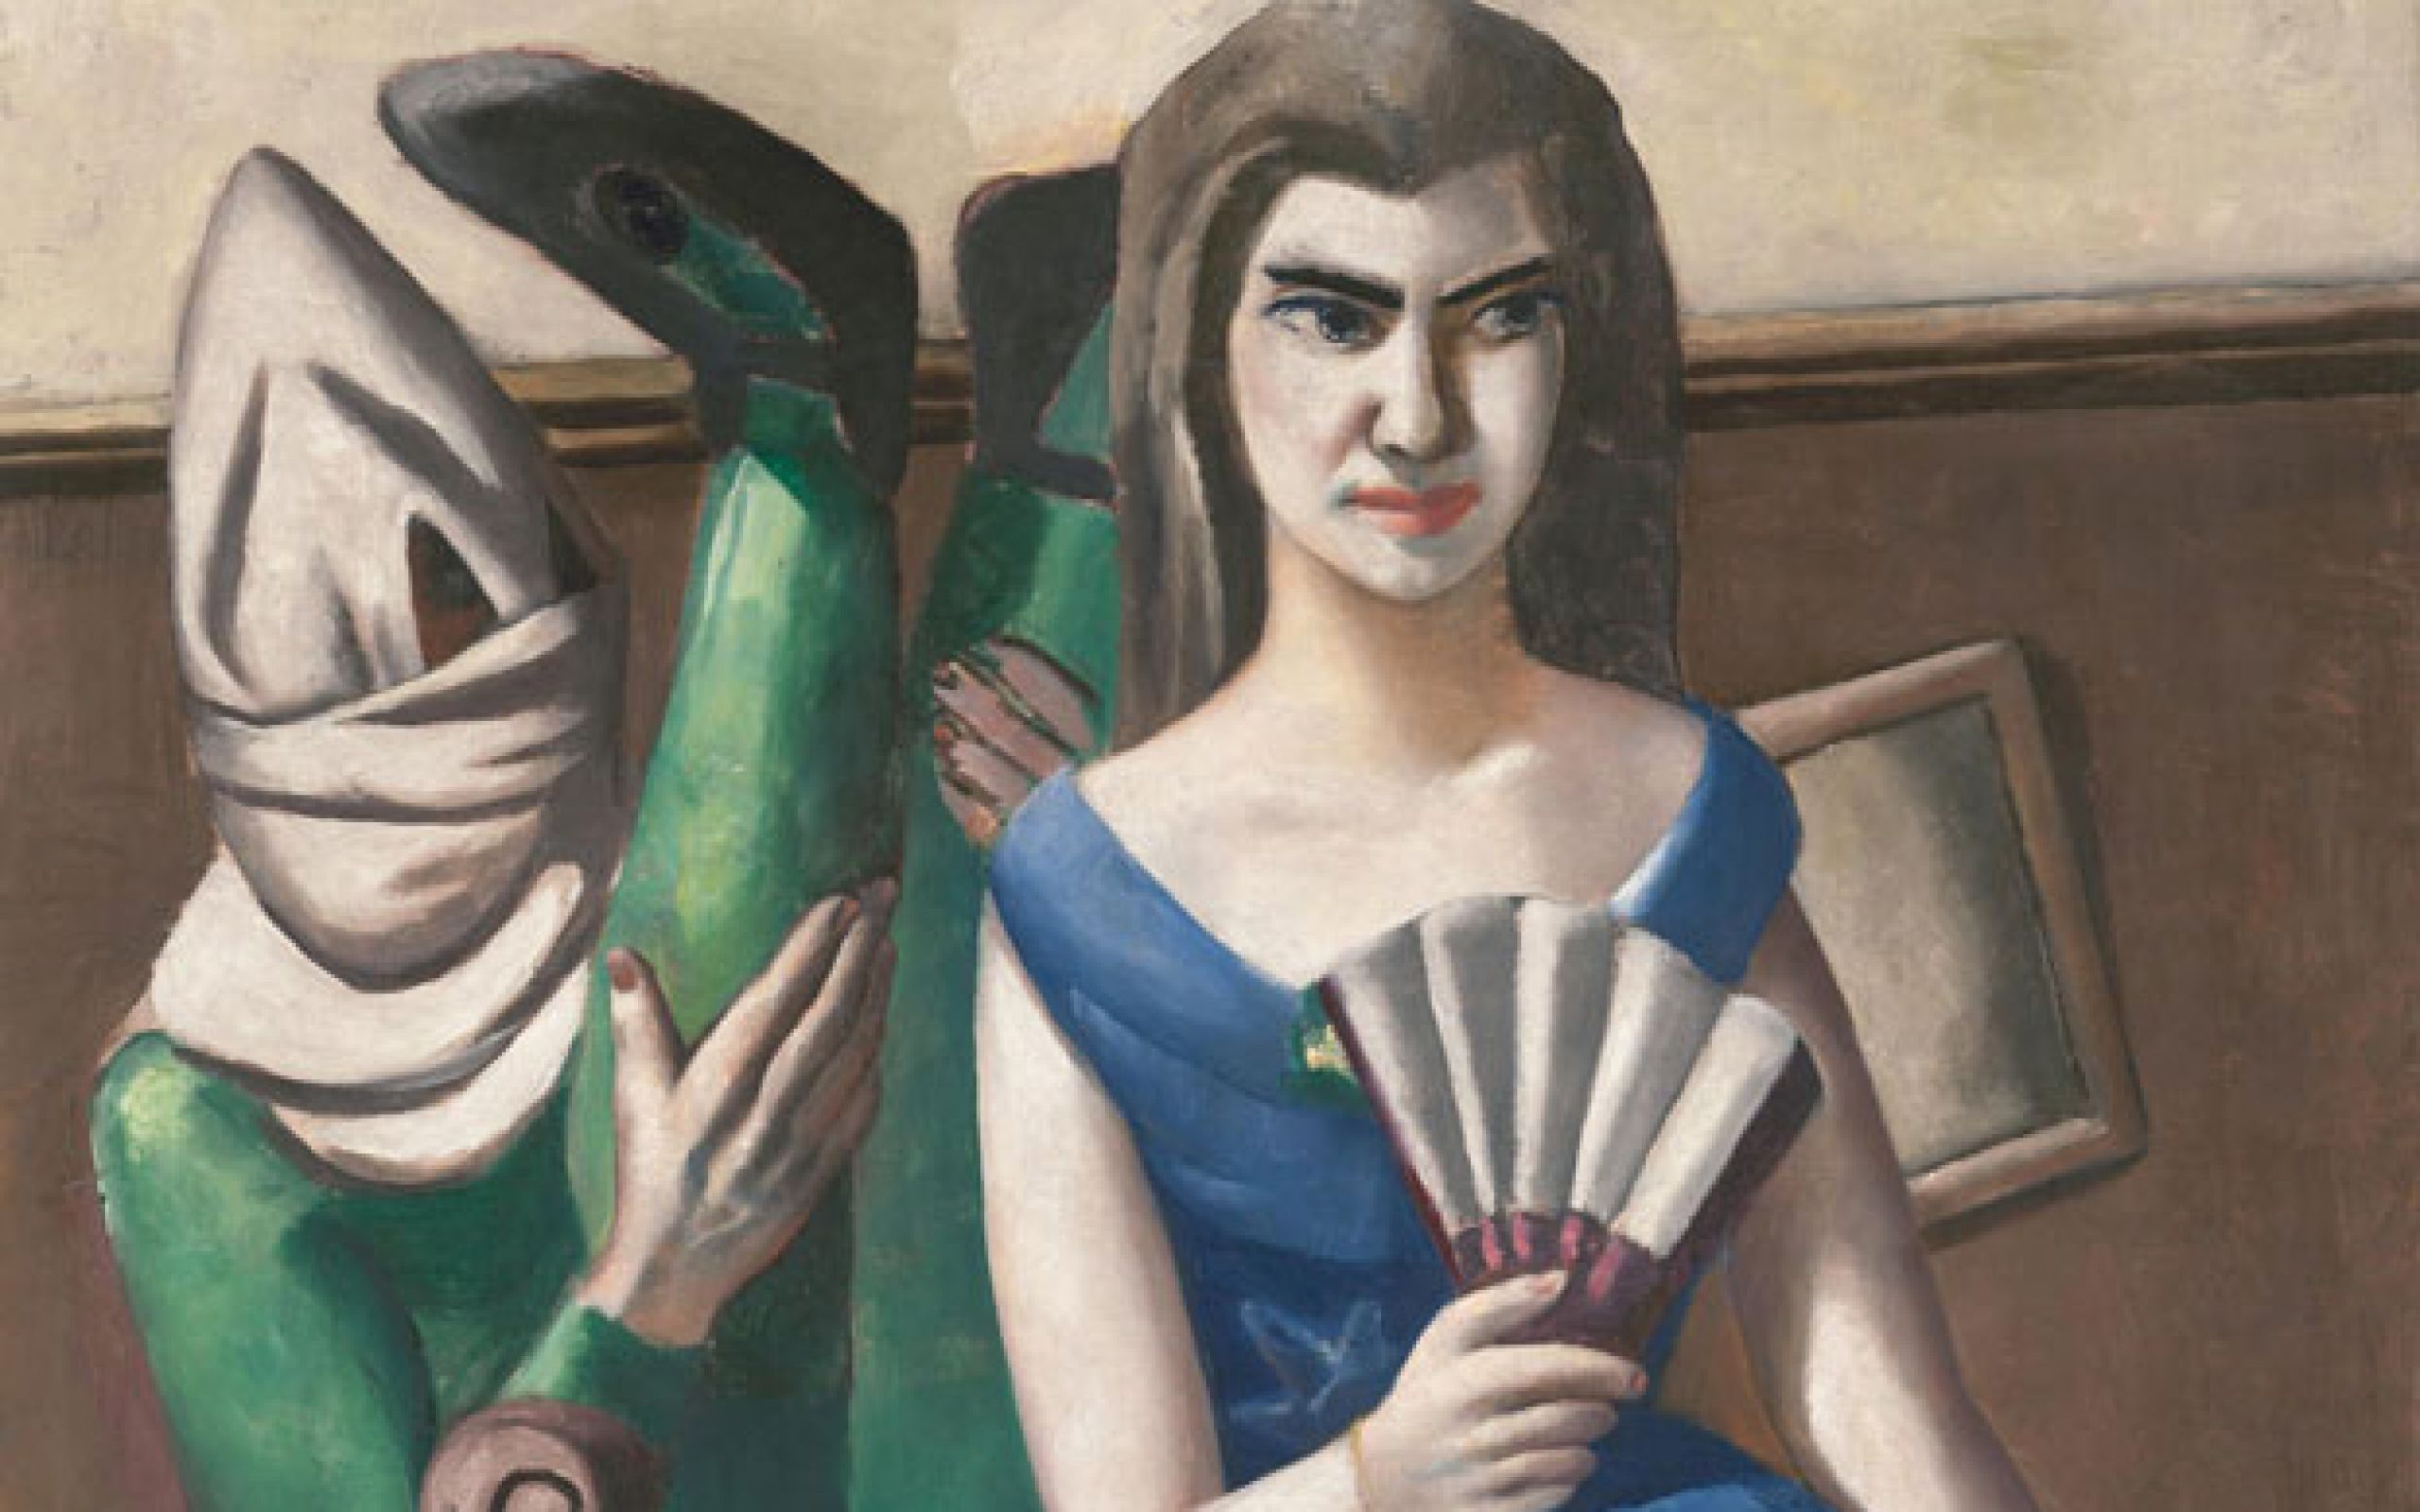 Das Bild zeigt rechts in blauem Kleid und heller Strumpfhose Mathilda von Kaulbach sitzend - einen Fächer in der rechten Hand. Zu ihrer Rechten sitzt eine Person in grünem Ganzkörperanzug. Kopf und Gesicht sind verhüllt - beide Beine nach oben gestreckt.